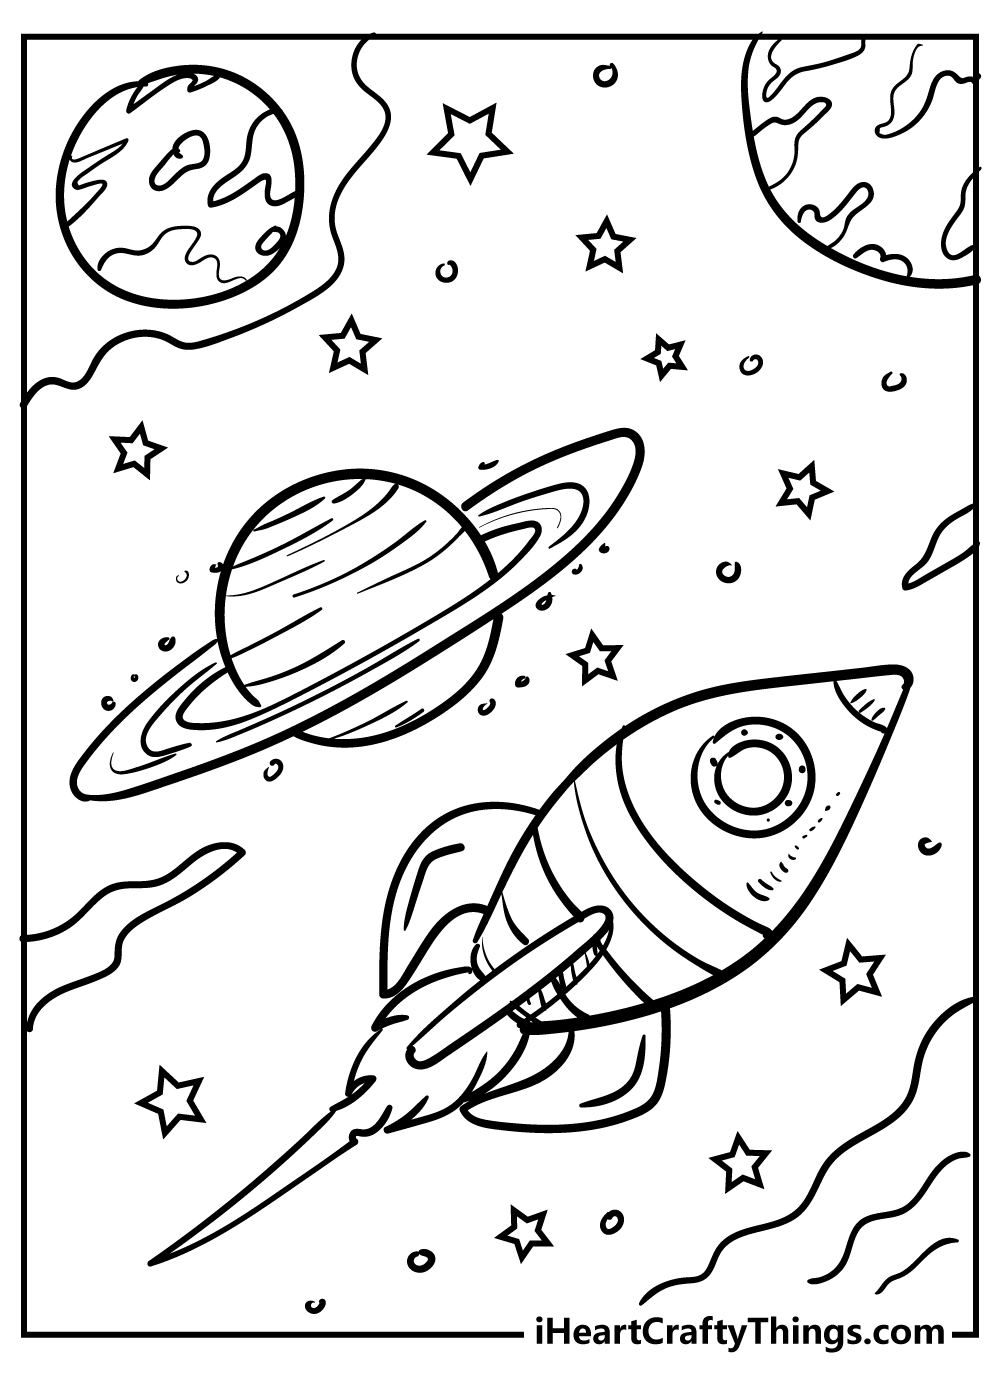 Раскраска космос и планеты. Космос раскраска для детей. Раскраска. В космосе. Раскраска космос и планеты для детей. Космические раскраски для детей.